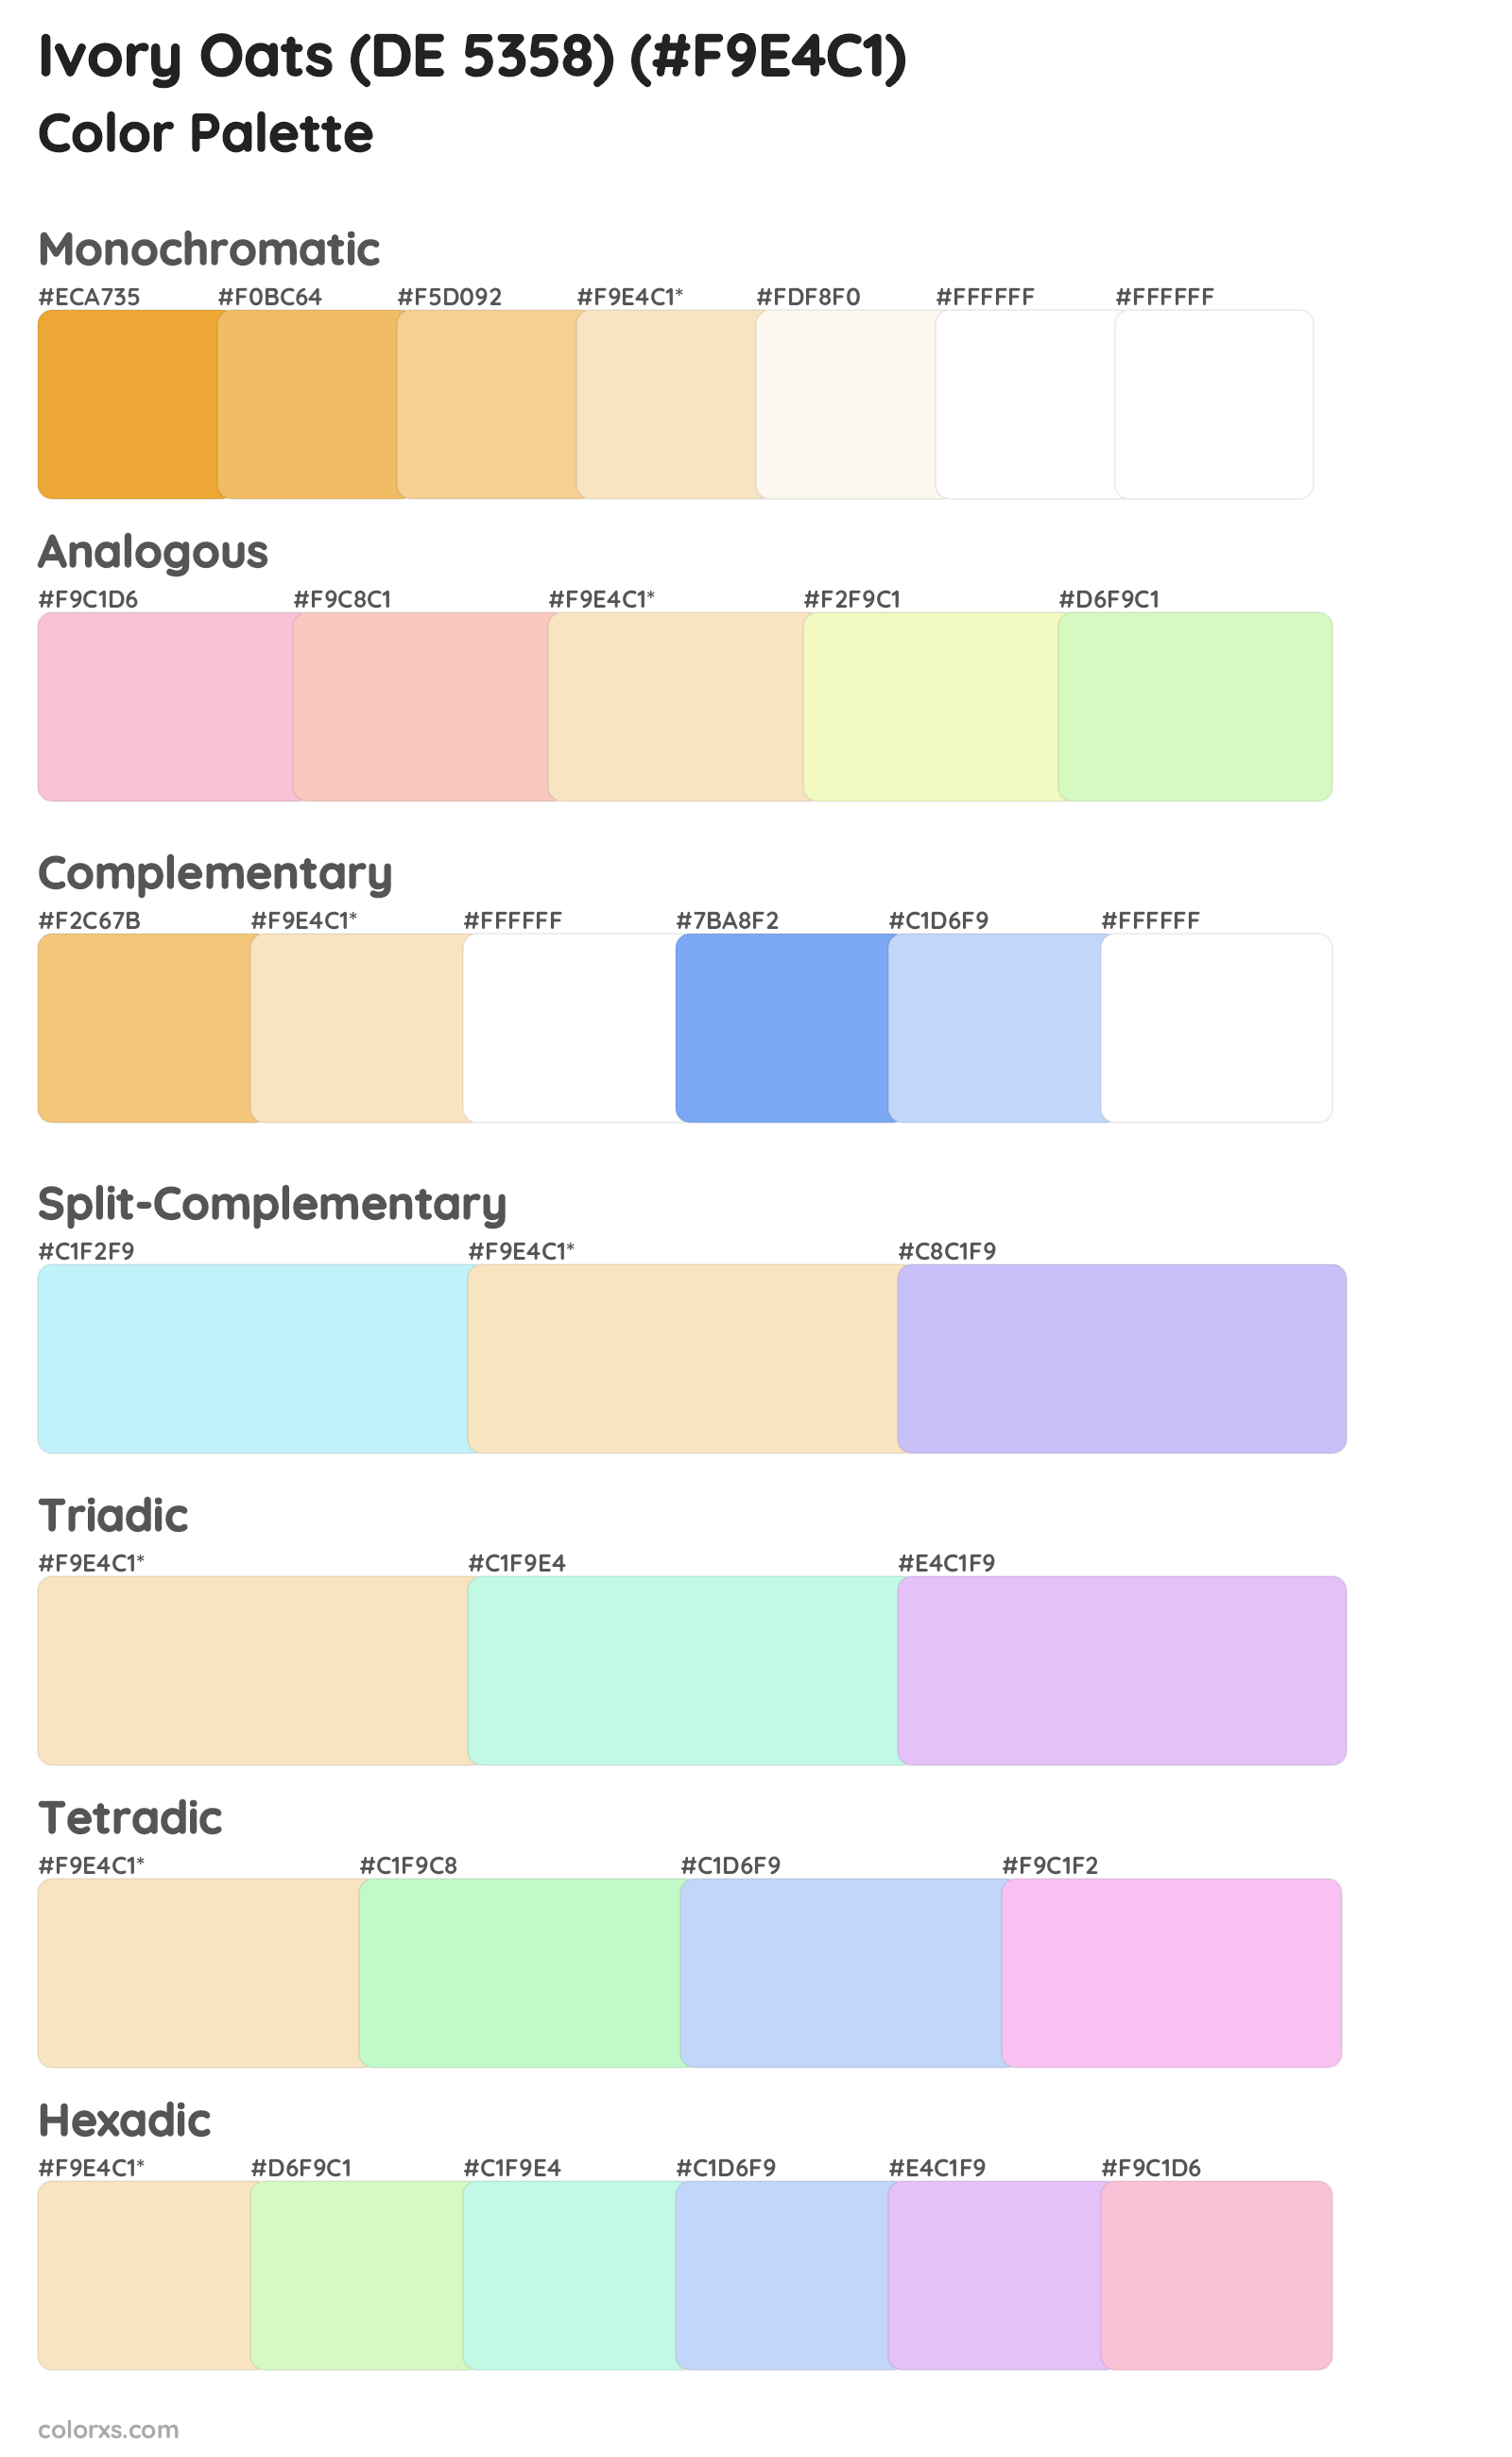 Ivory Oats (DE 5358) Color Scheme Palettes